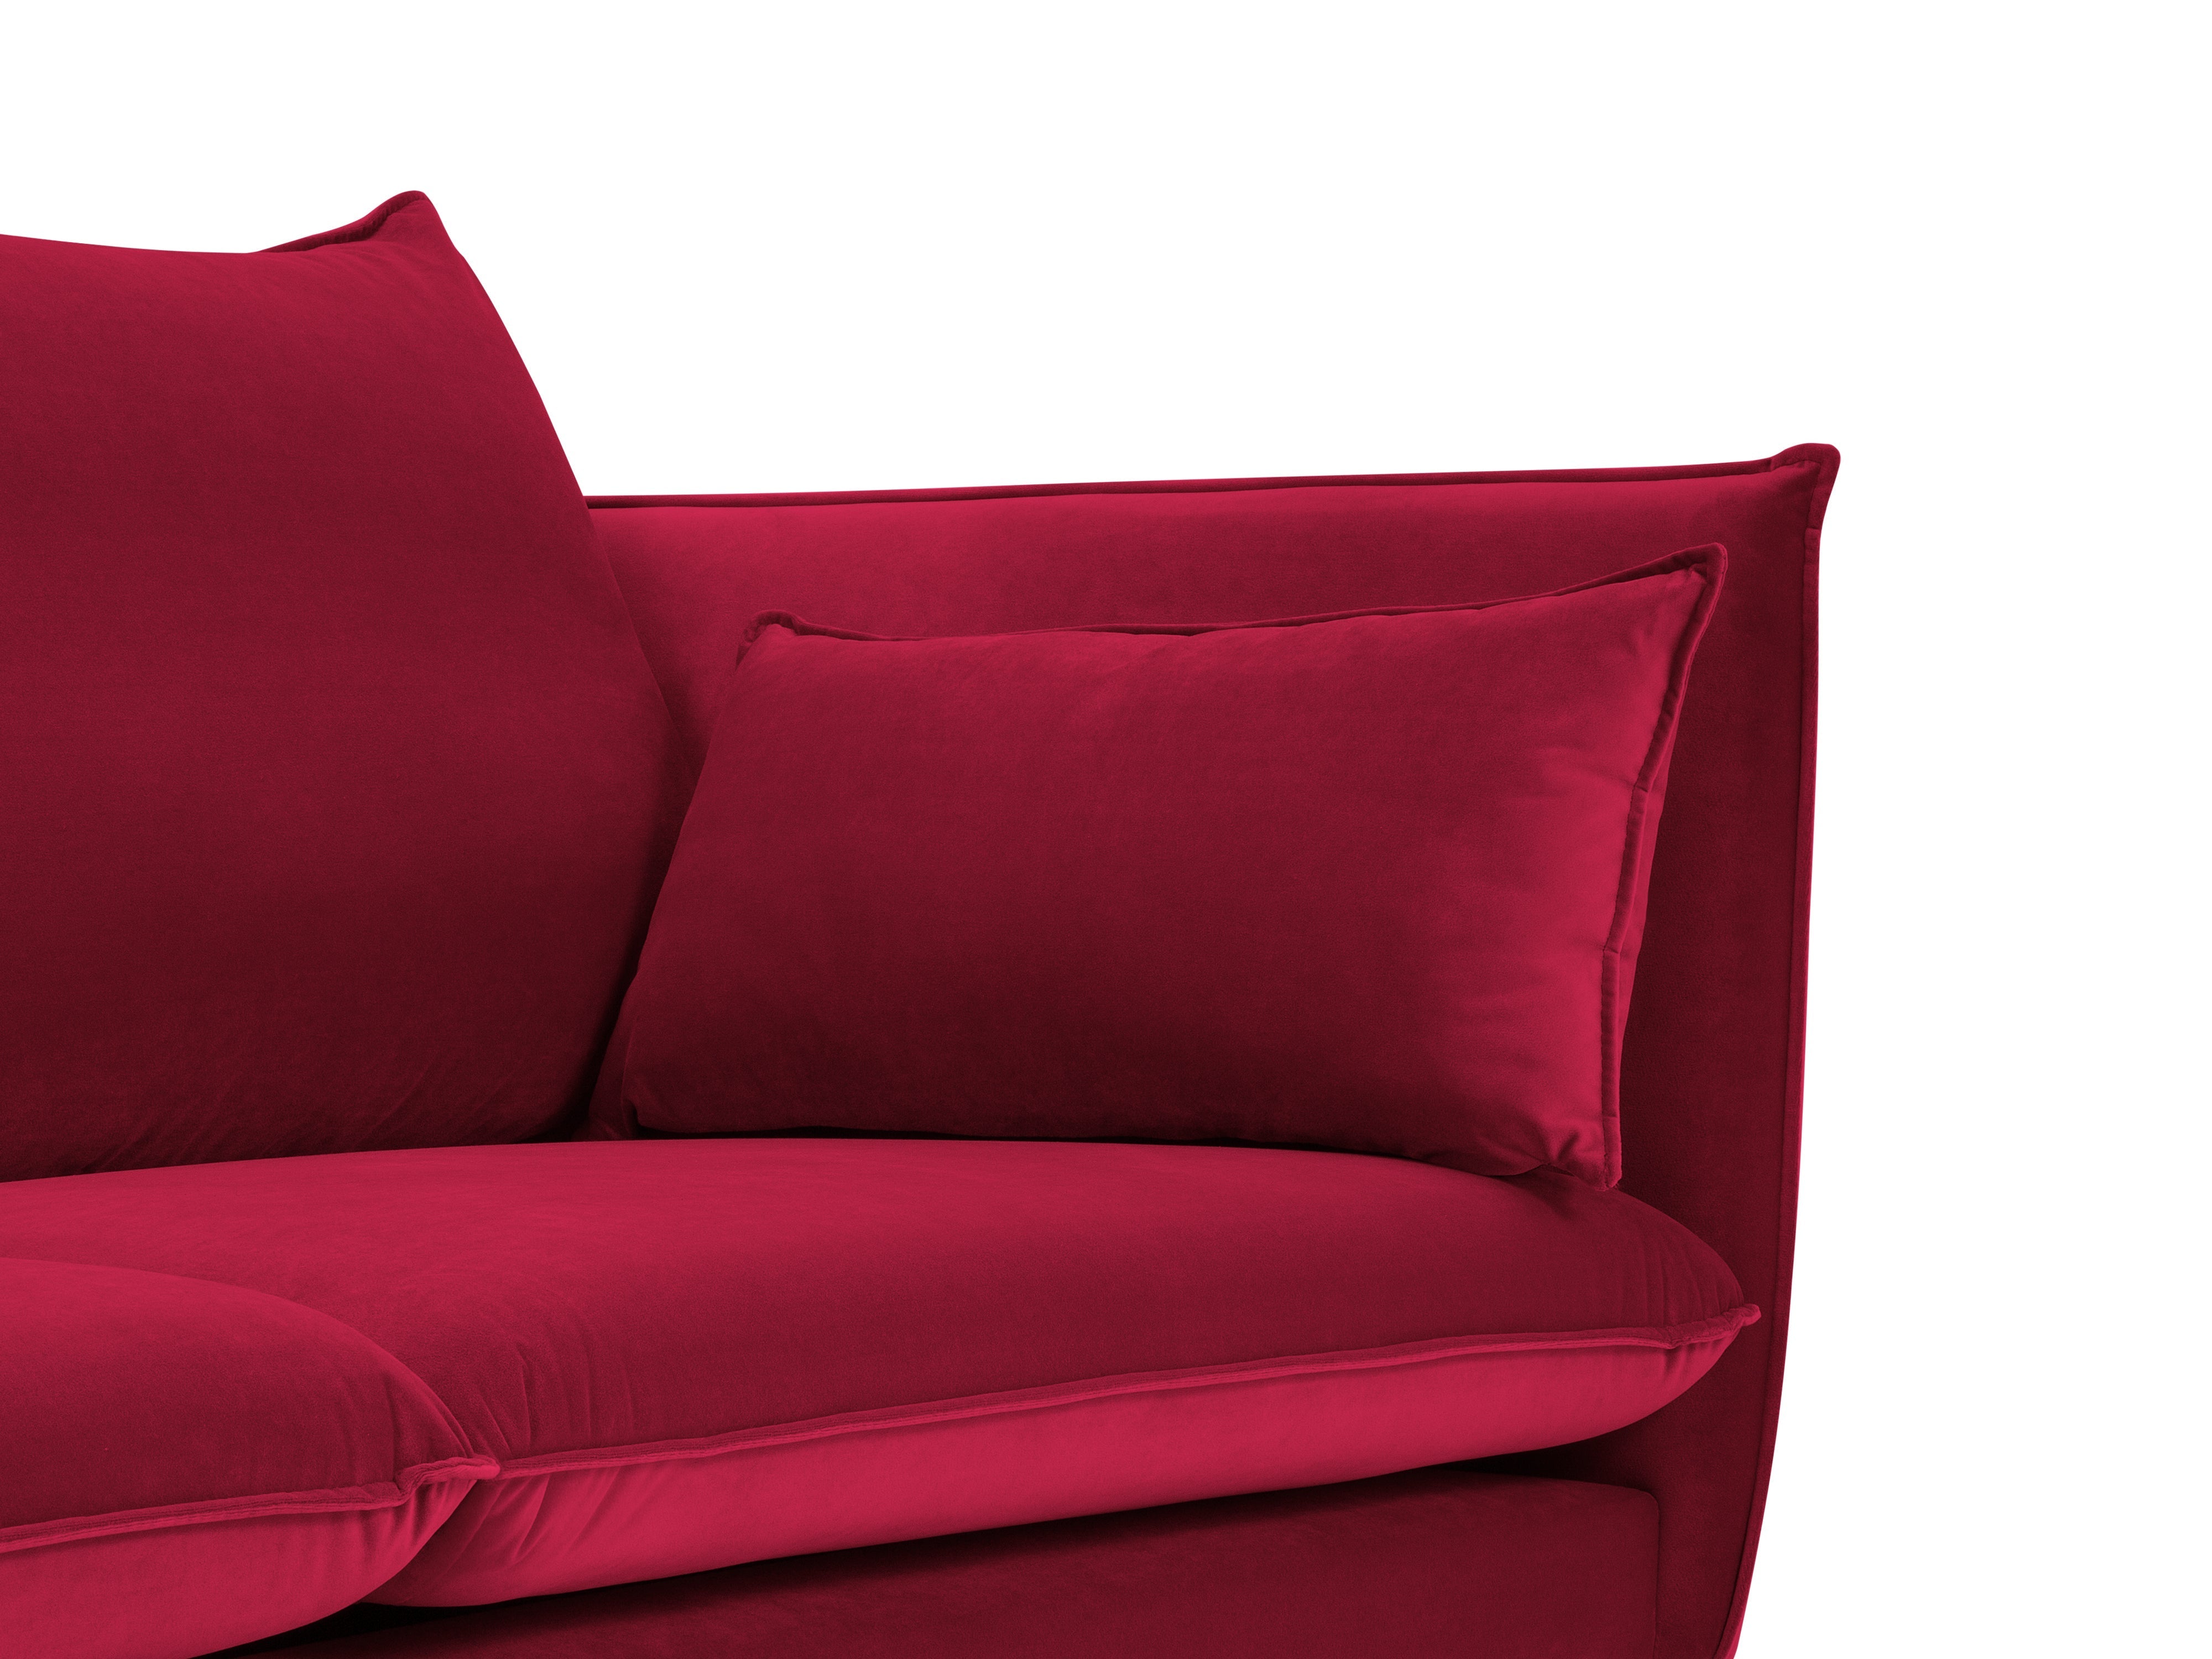 Velvet red 4-person sofa